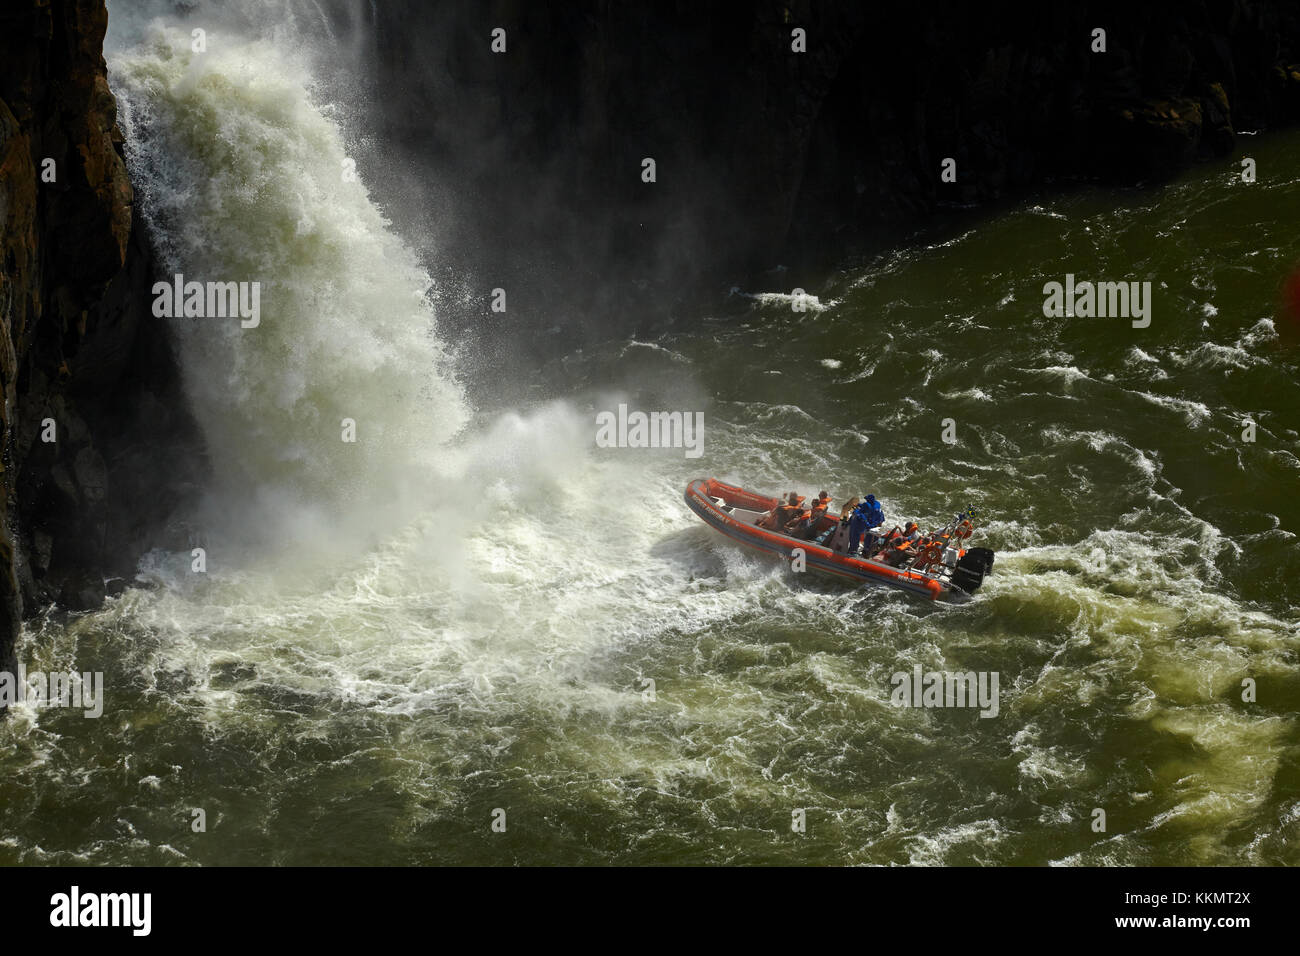 Touristenboot unter Iguazu Falls, Brasilien - Argentinien Grenze, Südamerika Stockfoto